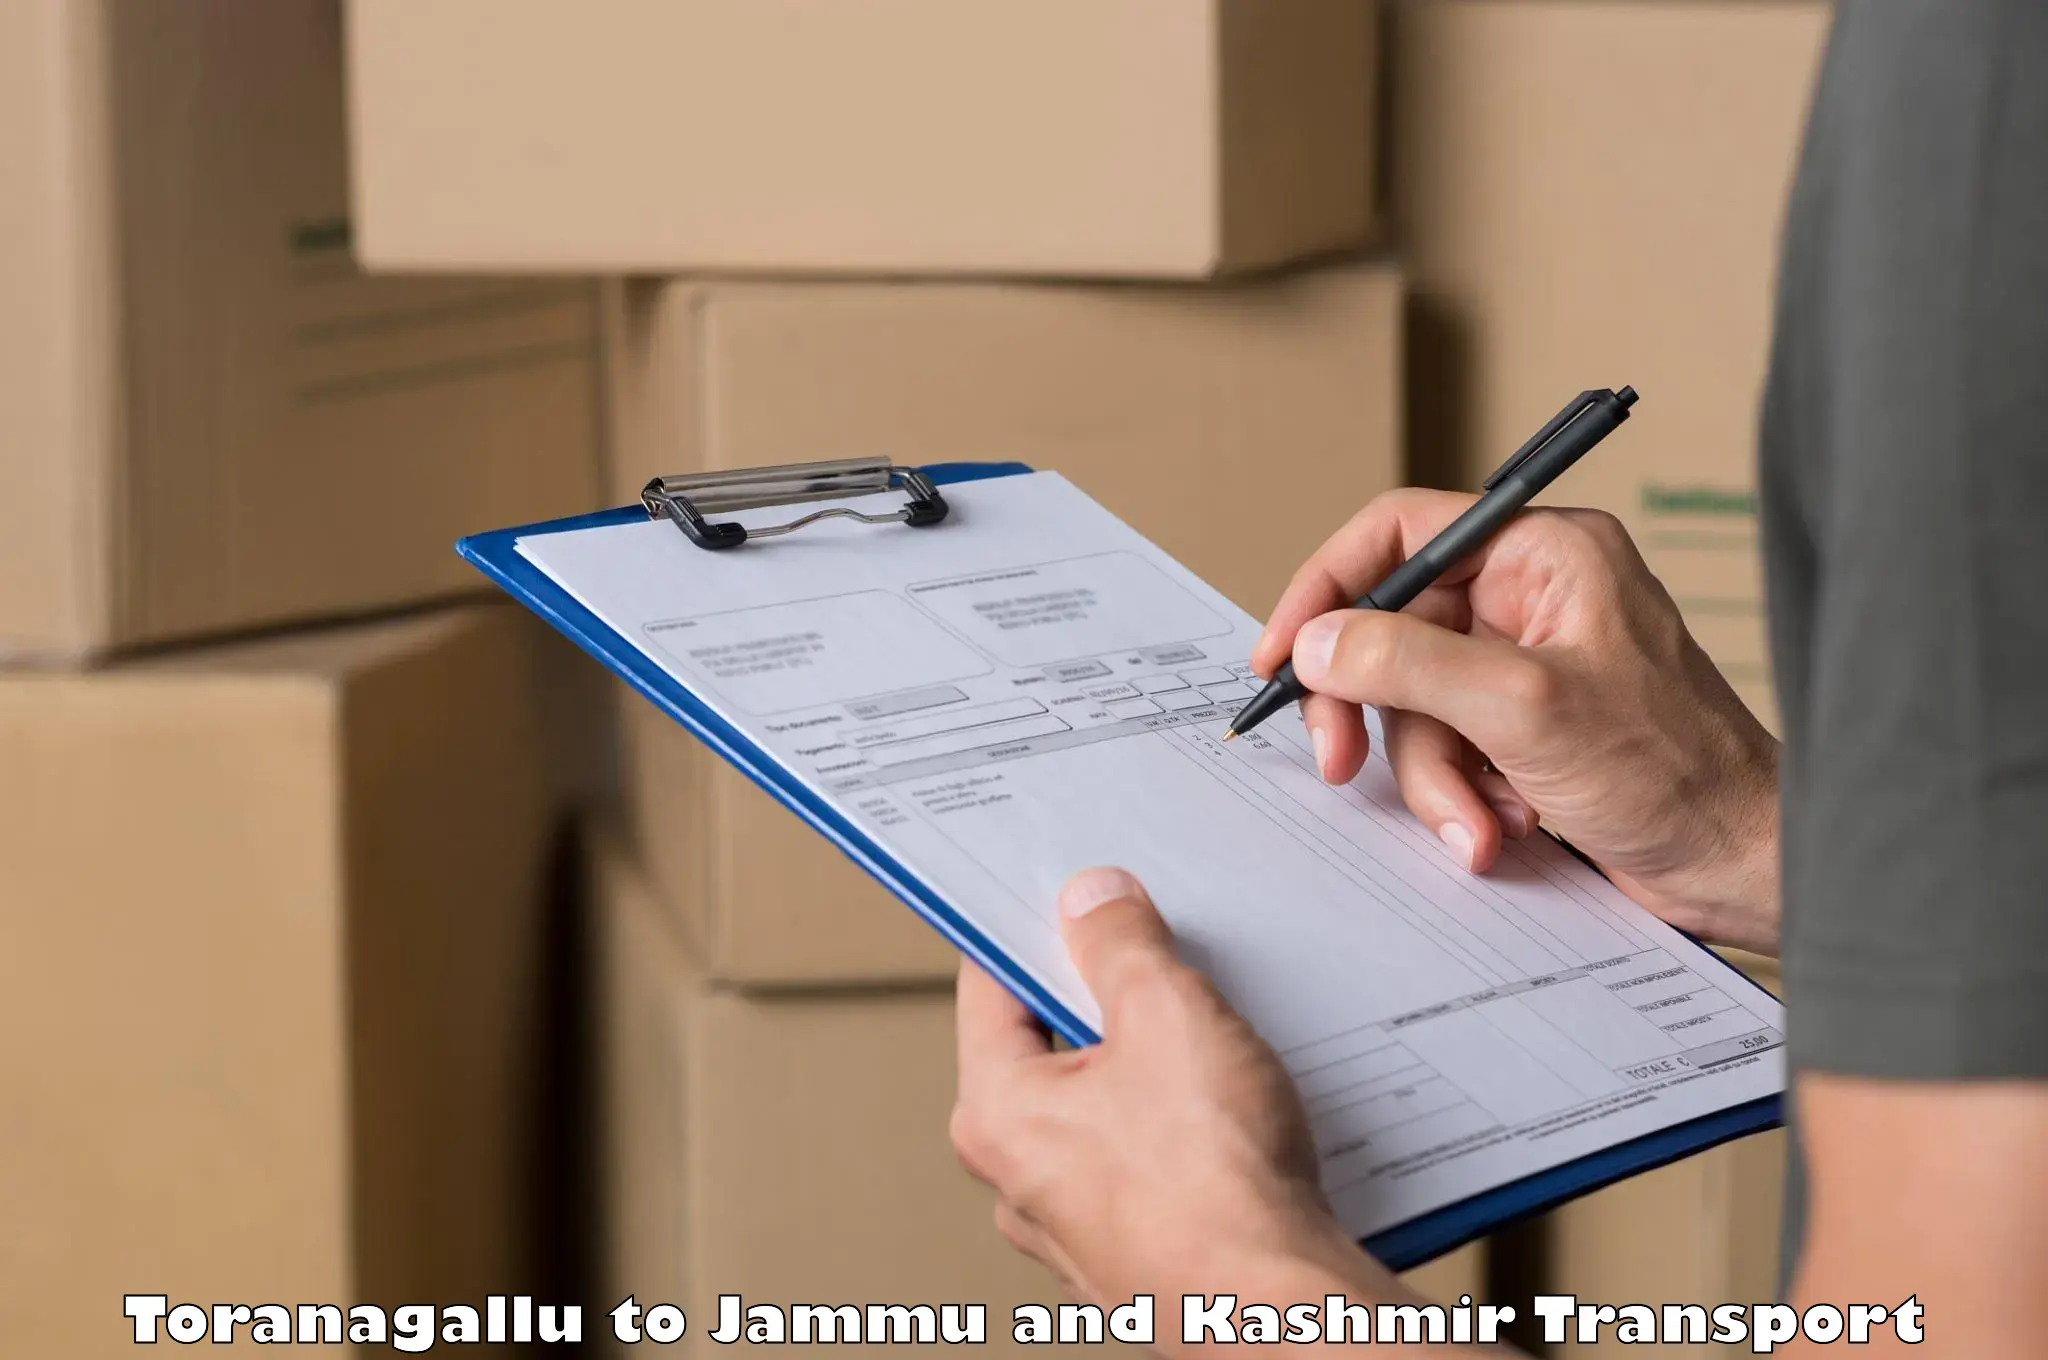 India truck logistics services Toranagallu to Kargil